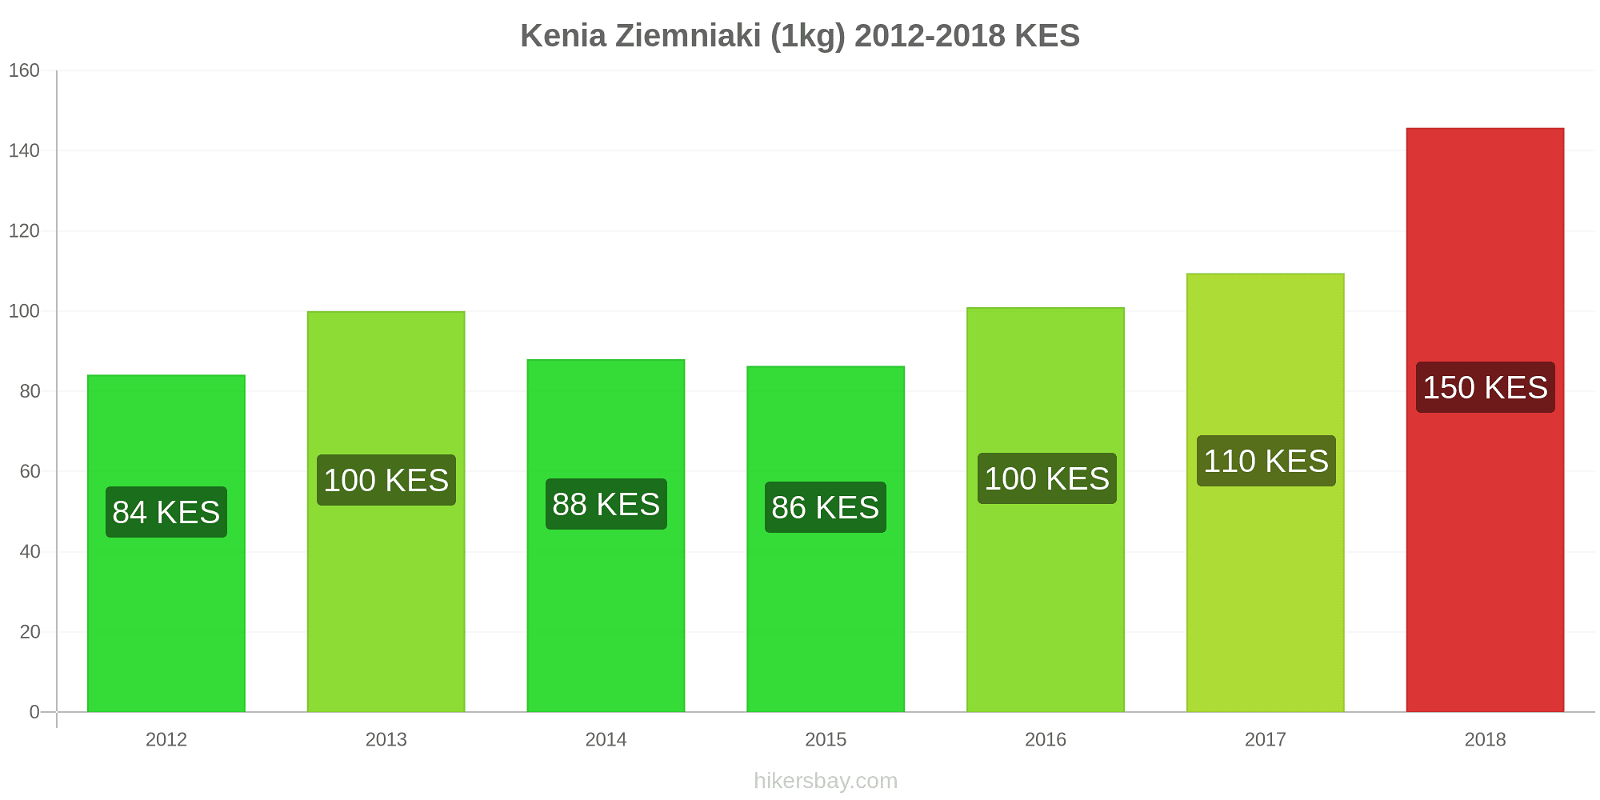 Kenia zmiany cen Ziemniaki (1kg) hikersbay.com